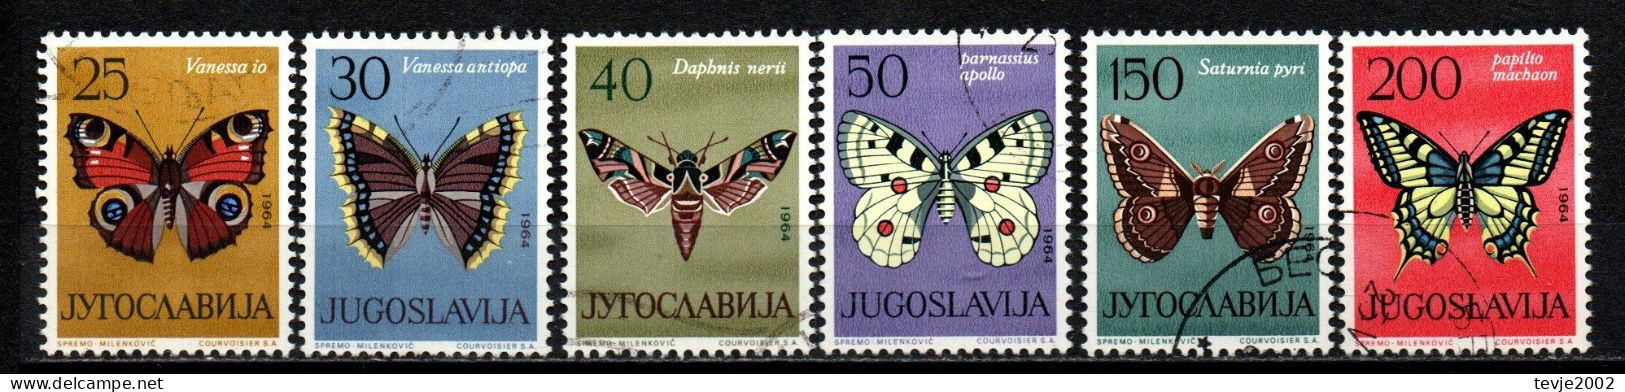 Jugoslawien 1964 - Mi.Nr. 1069 - 1074 - Gestempelt Used - Tiere Animals Schmetterlinge Butterflies - Schmetterlinge